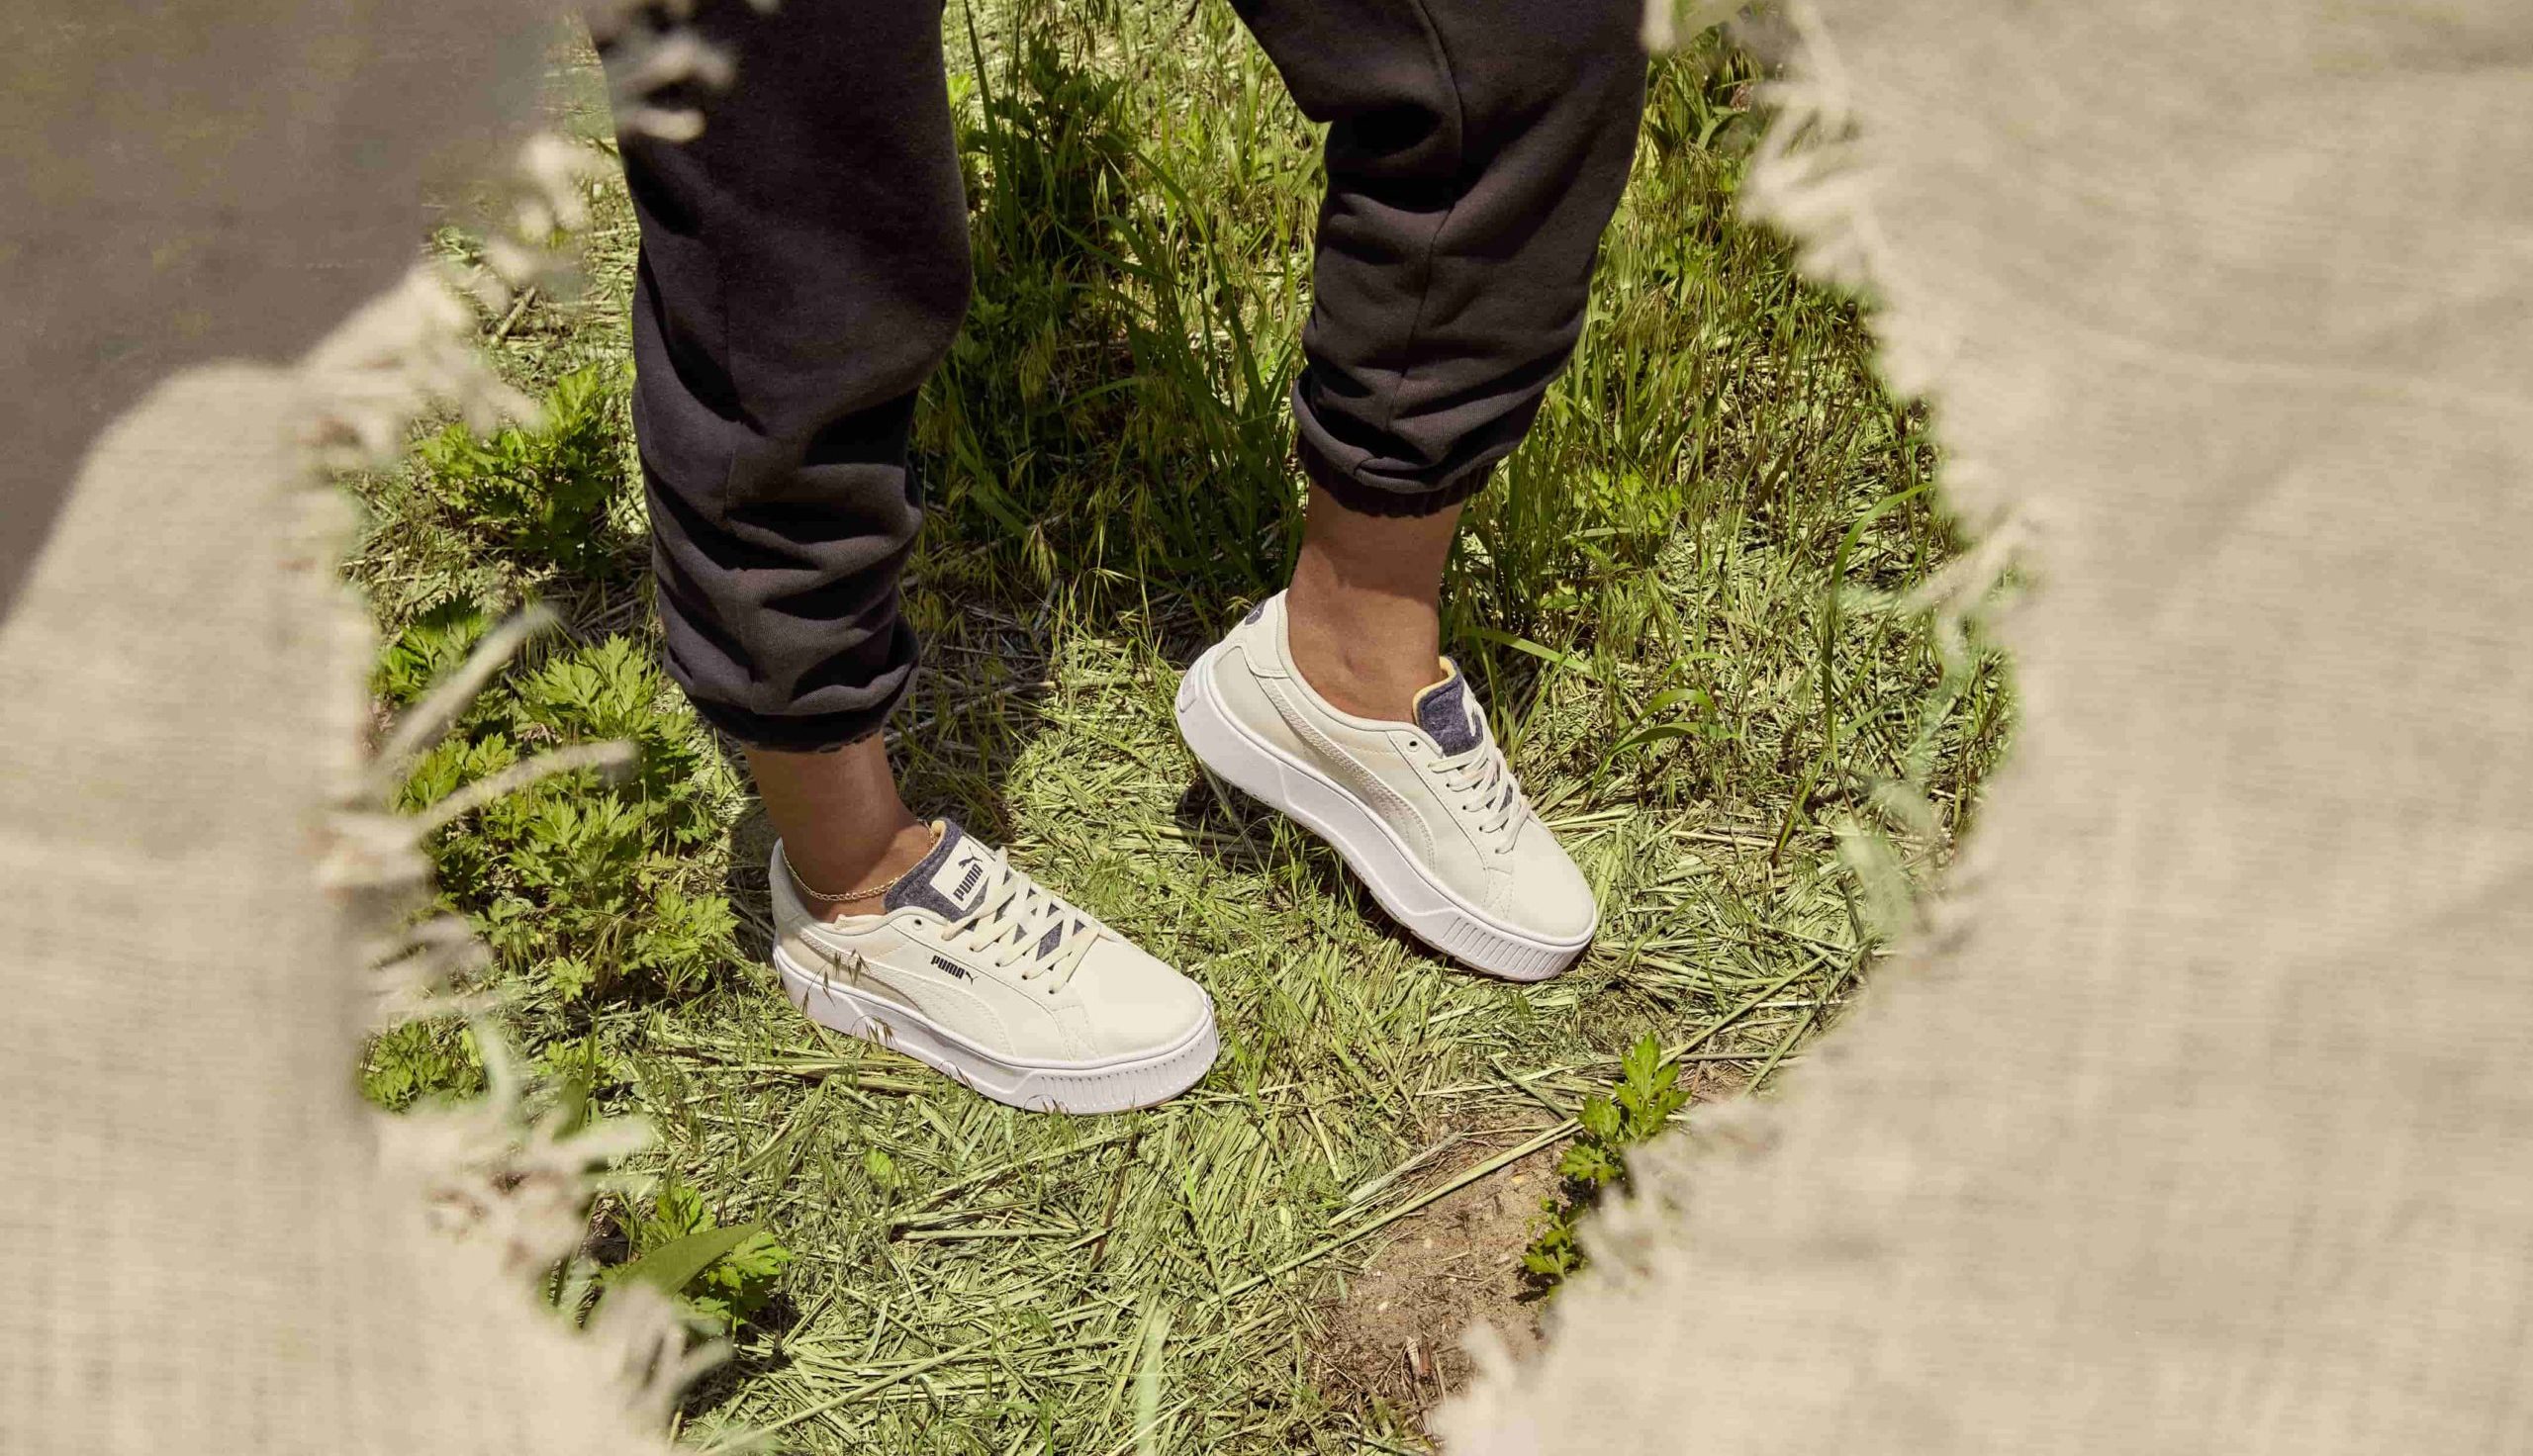 Een close-up van iemand die in het gras staat en duurzame PUMA sneakers draagt